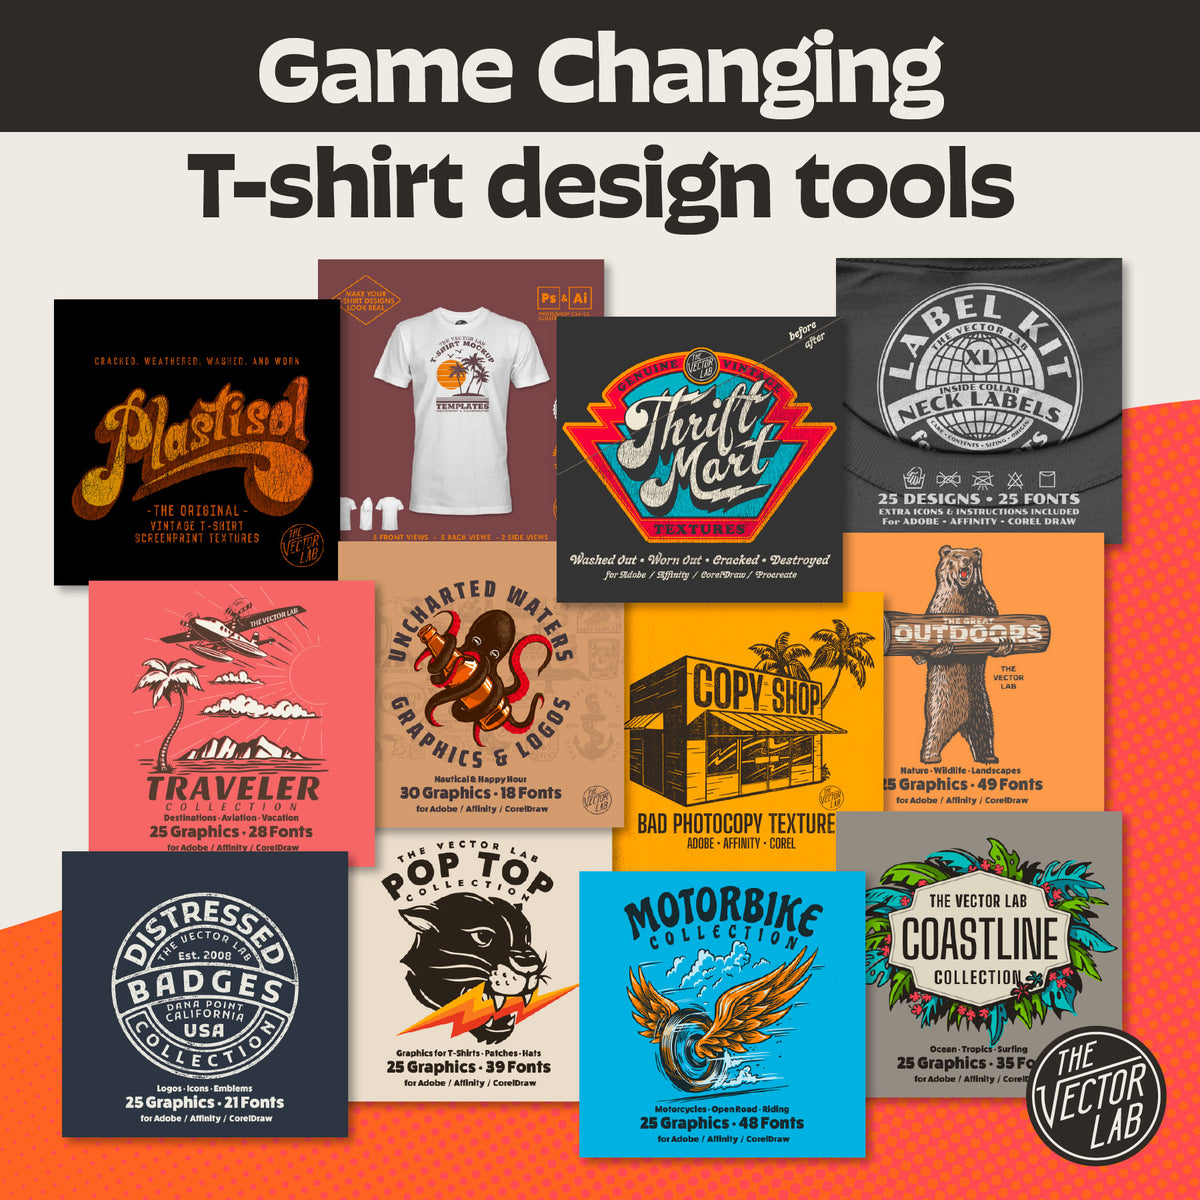 T-shirt Design Contest Flyer Template Draw T-shirt Design -  Sweden